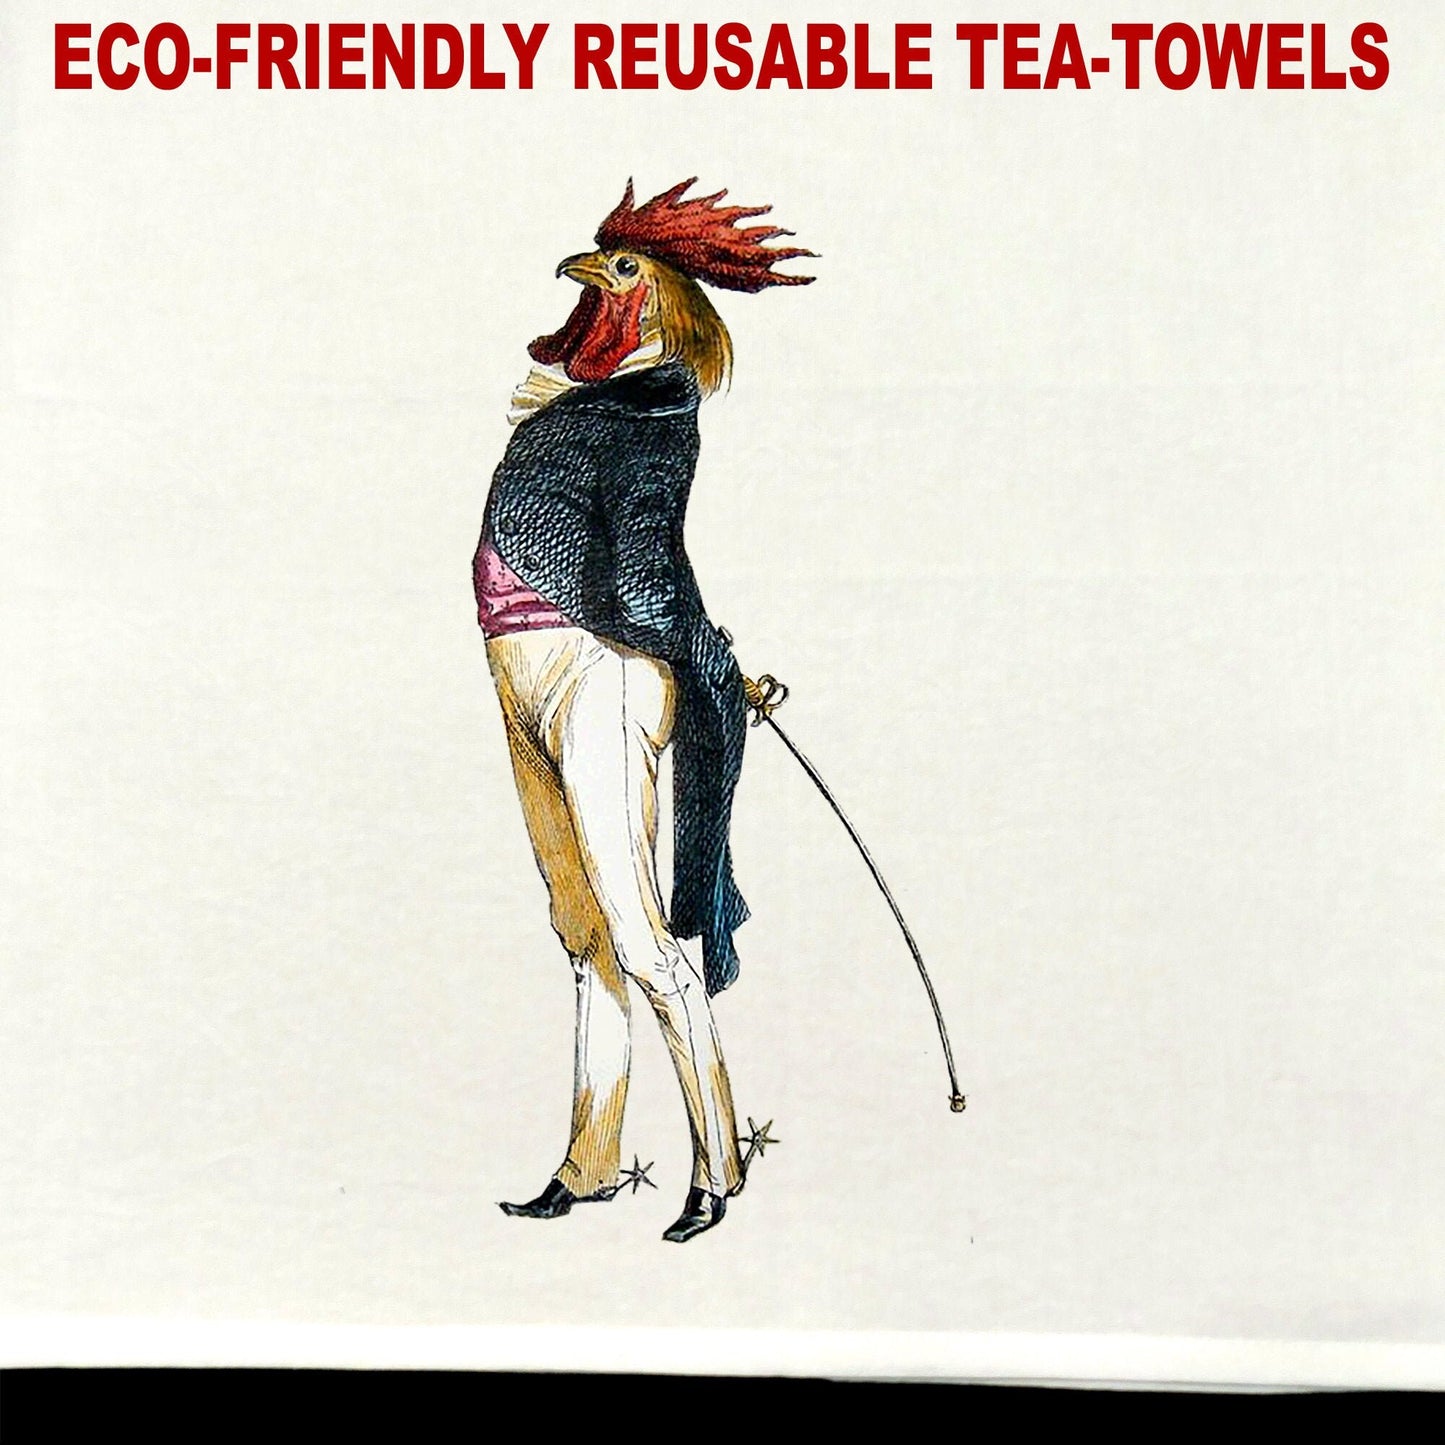 Rooster Gentleman Tea Towel / tea towel / dish towel / hand towel / reusable wipe / kitchen gift / kitchen deco